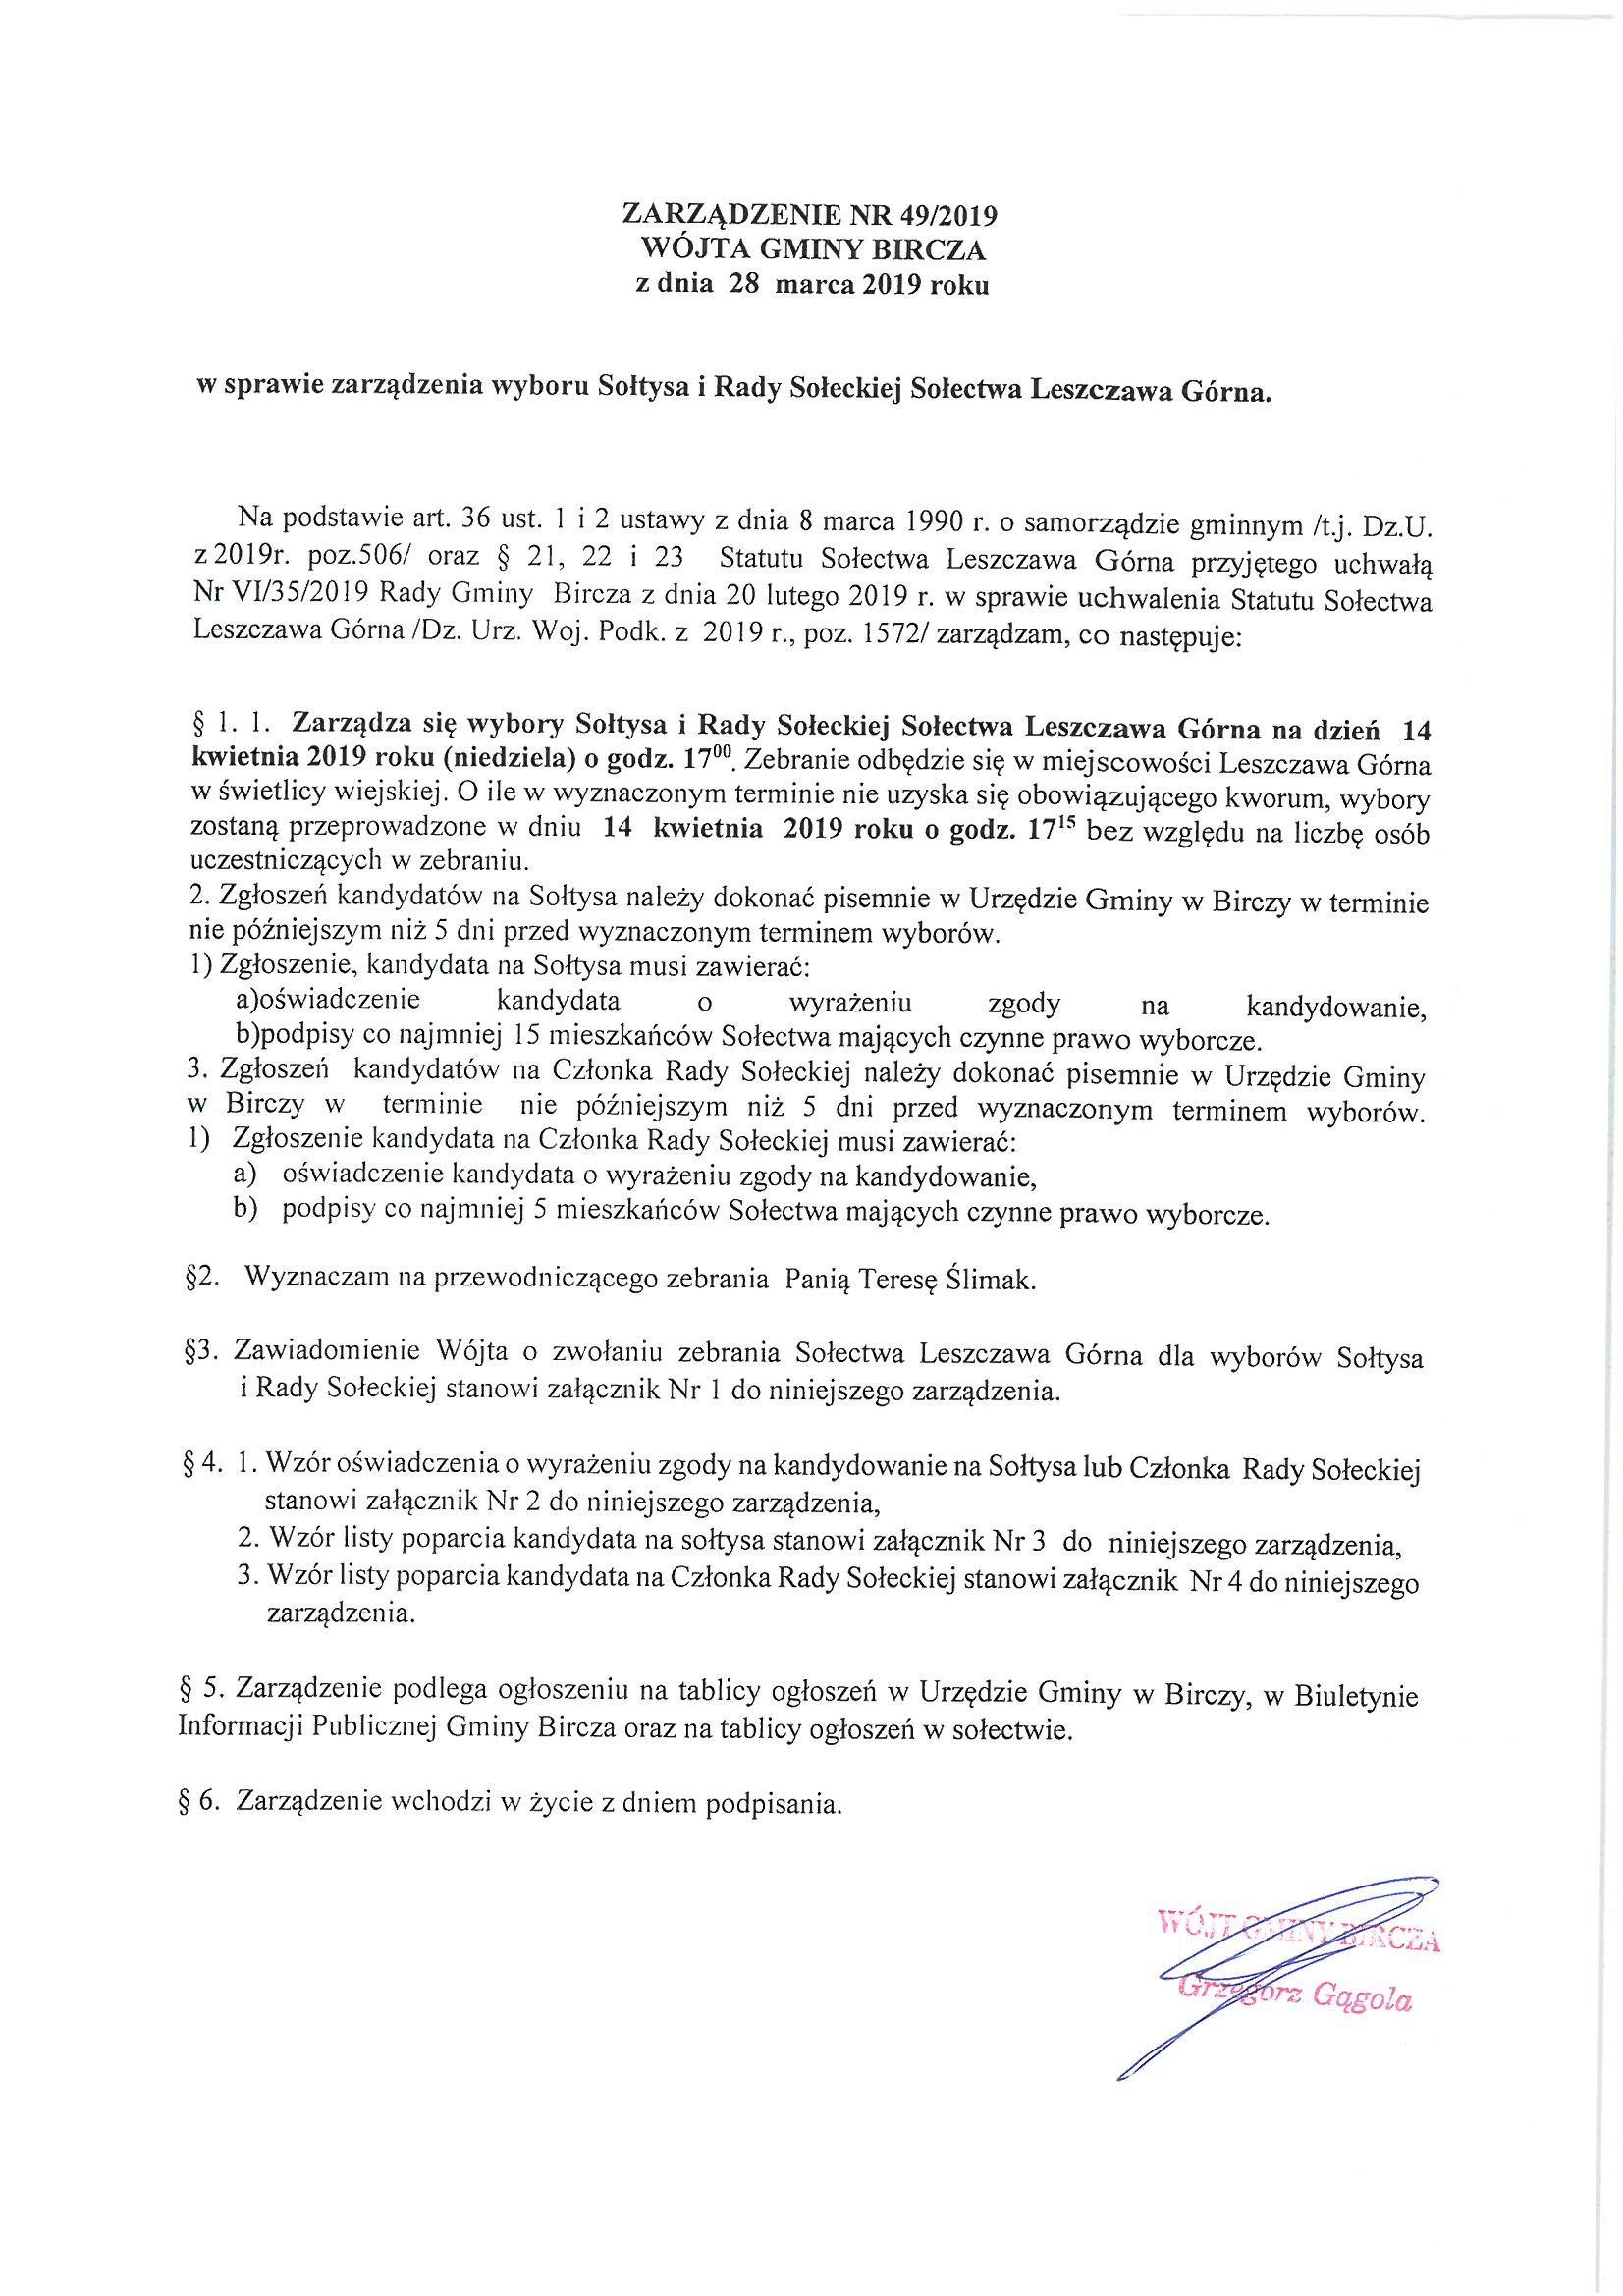 ------- Zarządzenie w sprawie wyboru Sołtysa i Rady Sołeckiej Leszczawa Górna.jpg